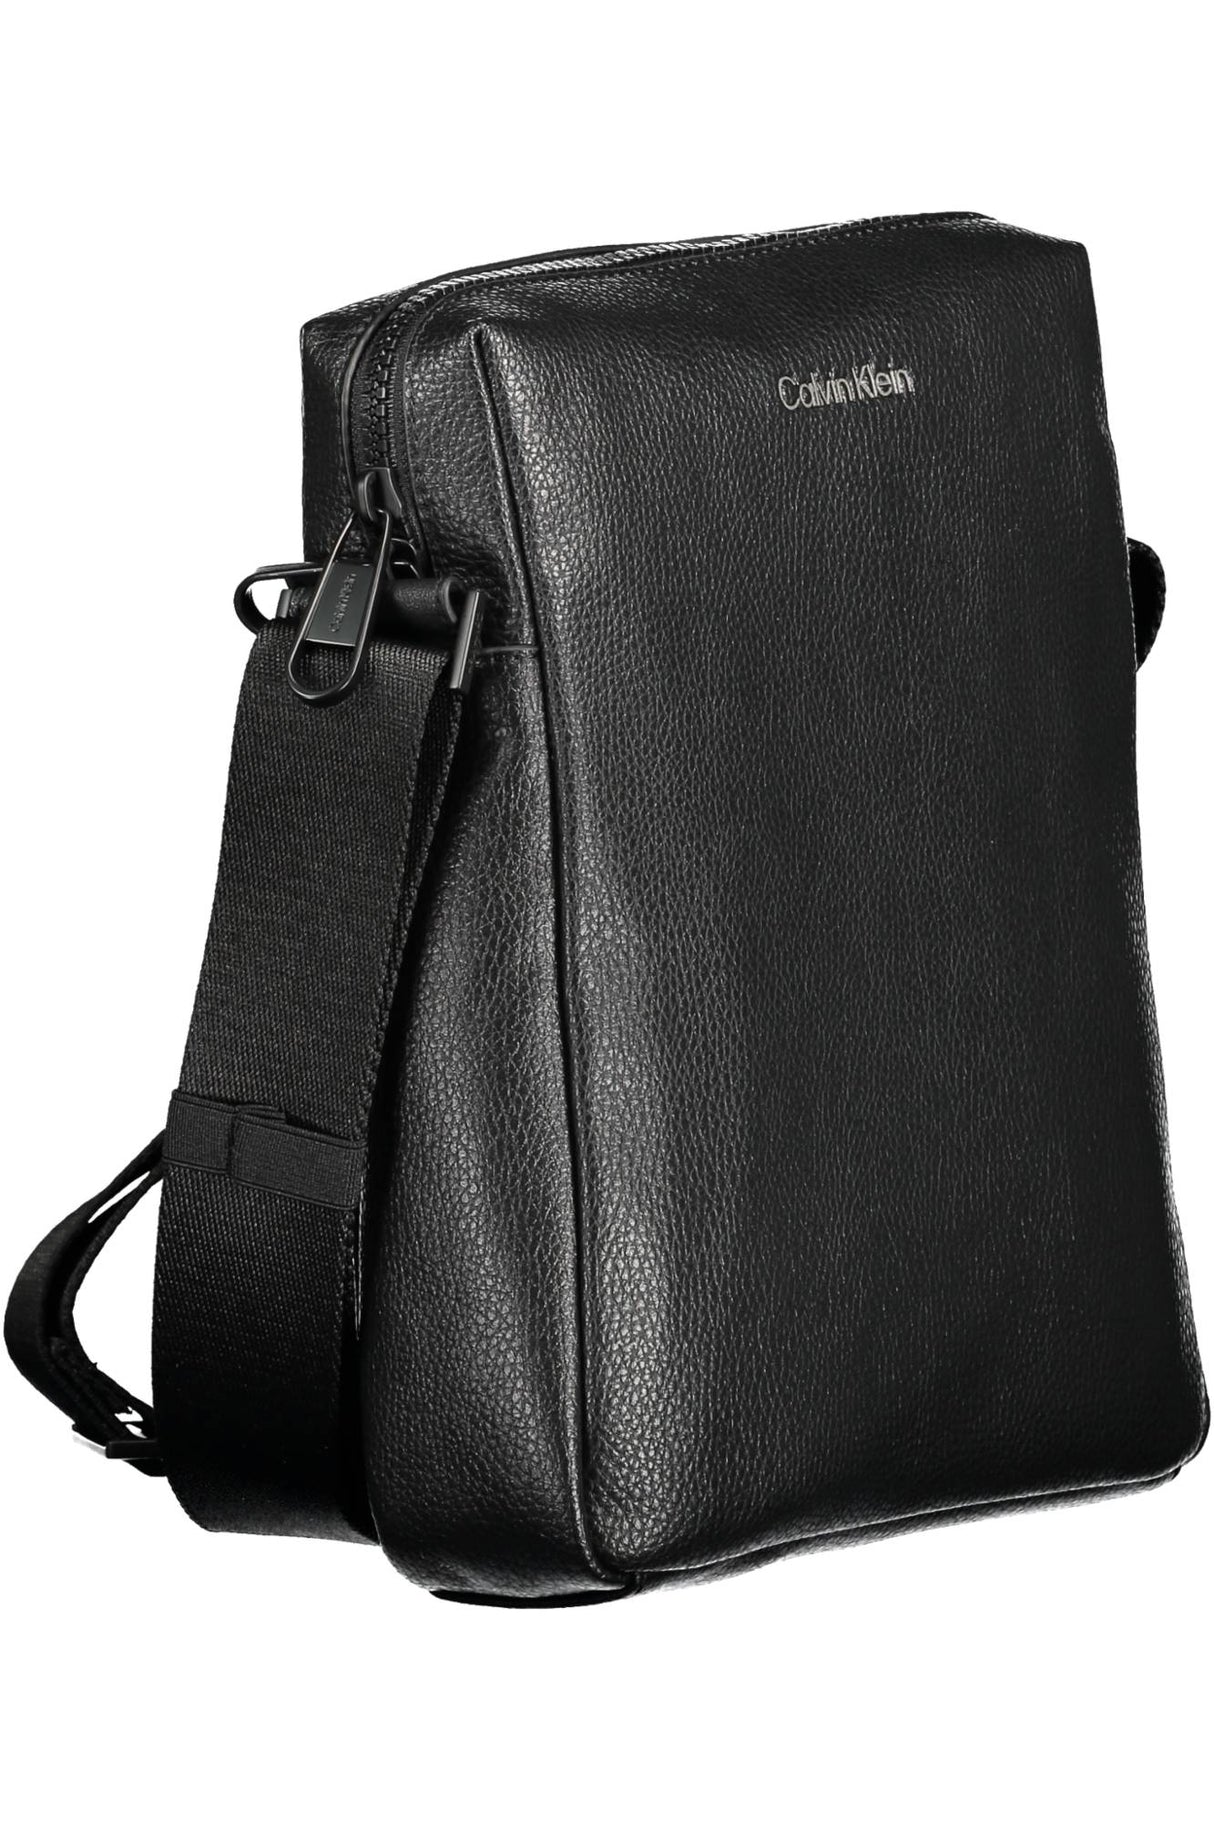 Calvin Klein Black Men's Shoulder Bag - Men's